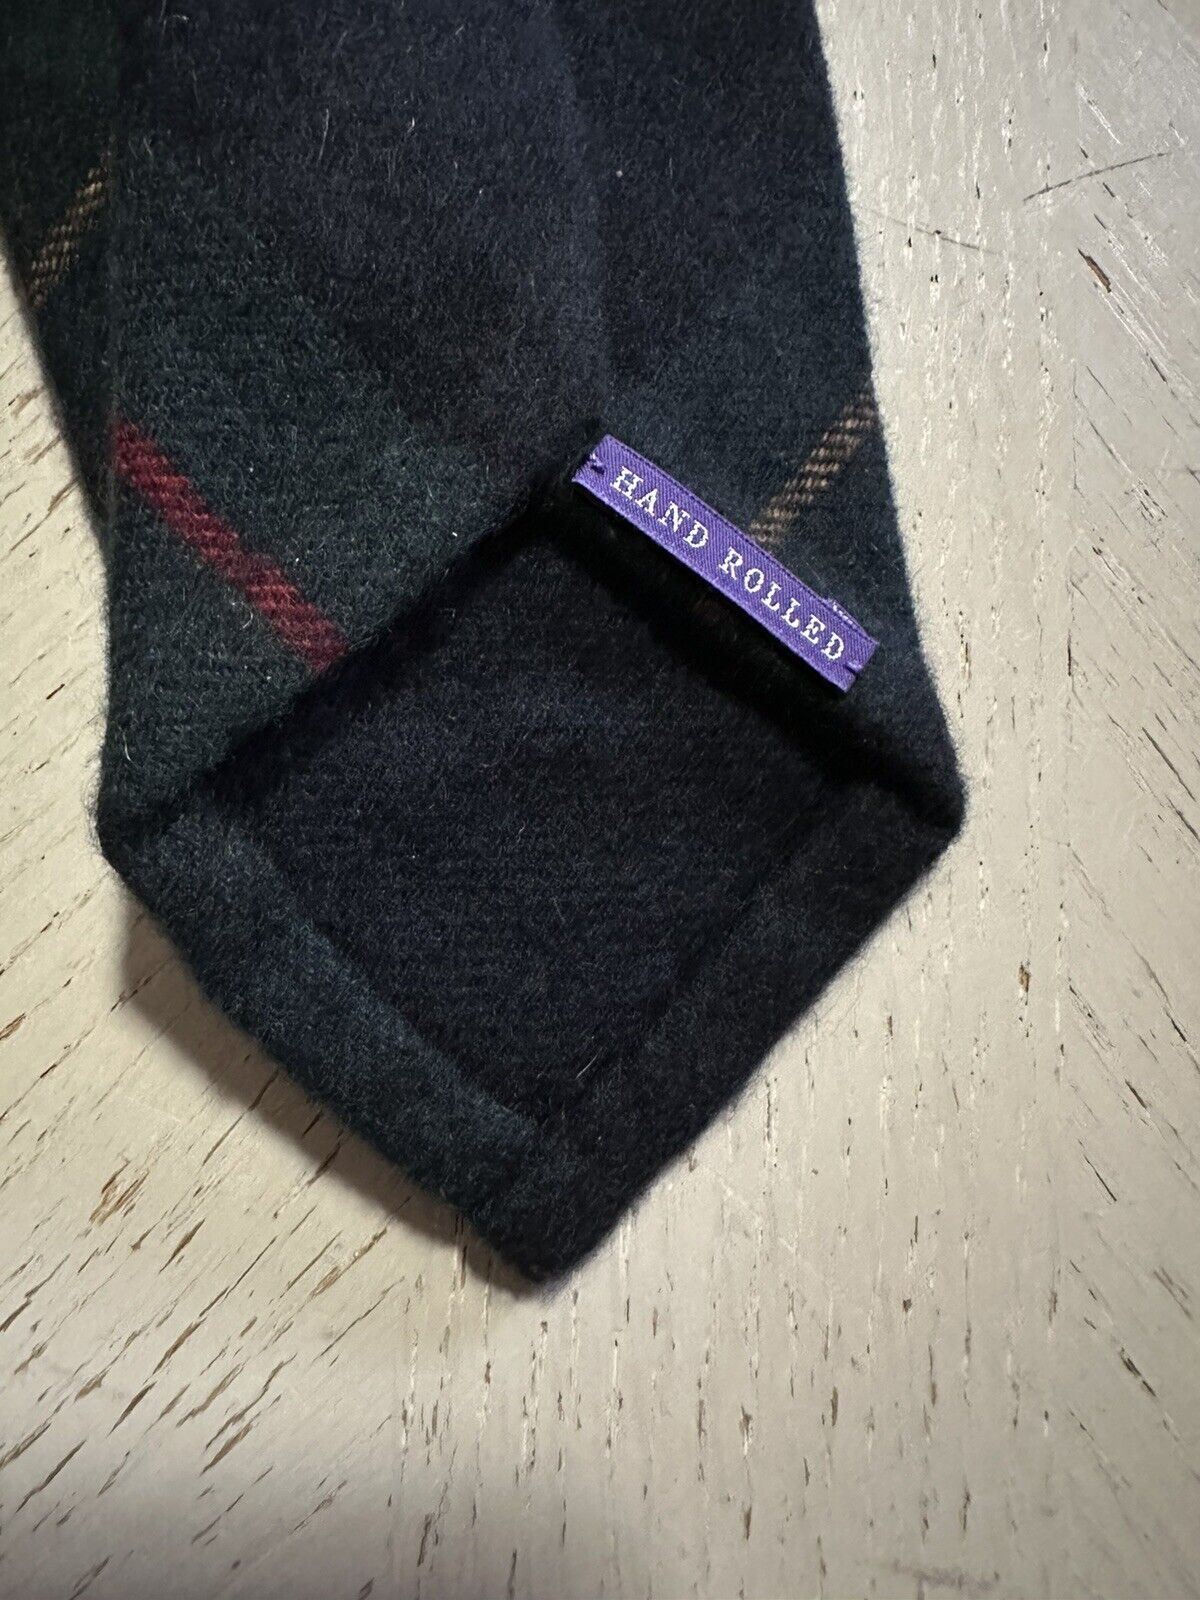 Neu: 265 $ Ralph Lauren Purple Label Kaschmirhalskrawatte Gr/Y/R Handgefertigt in Italien